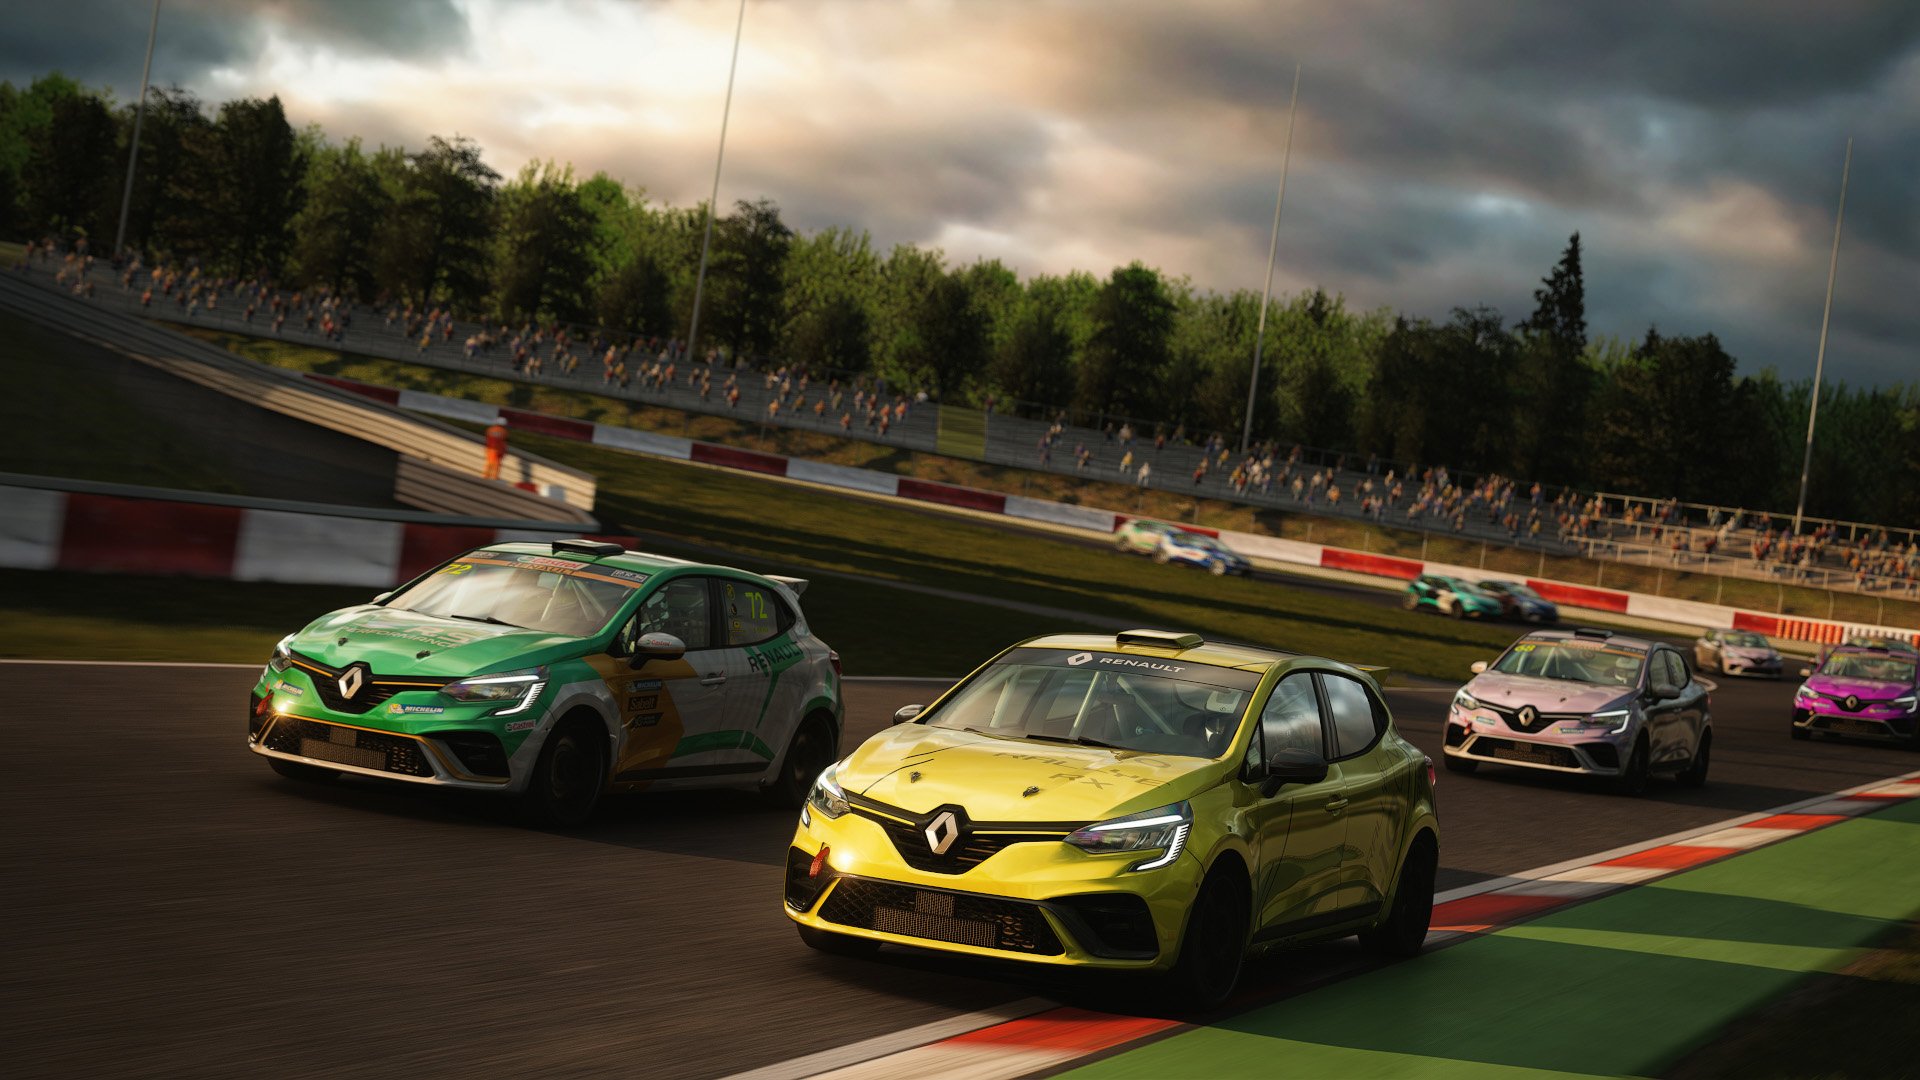 More information about "Assetto Corsa: campionato Renault Clio RS Cup 4FUN, stasera il round 2 in diretta!"